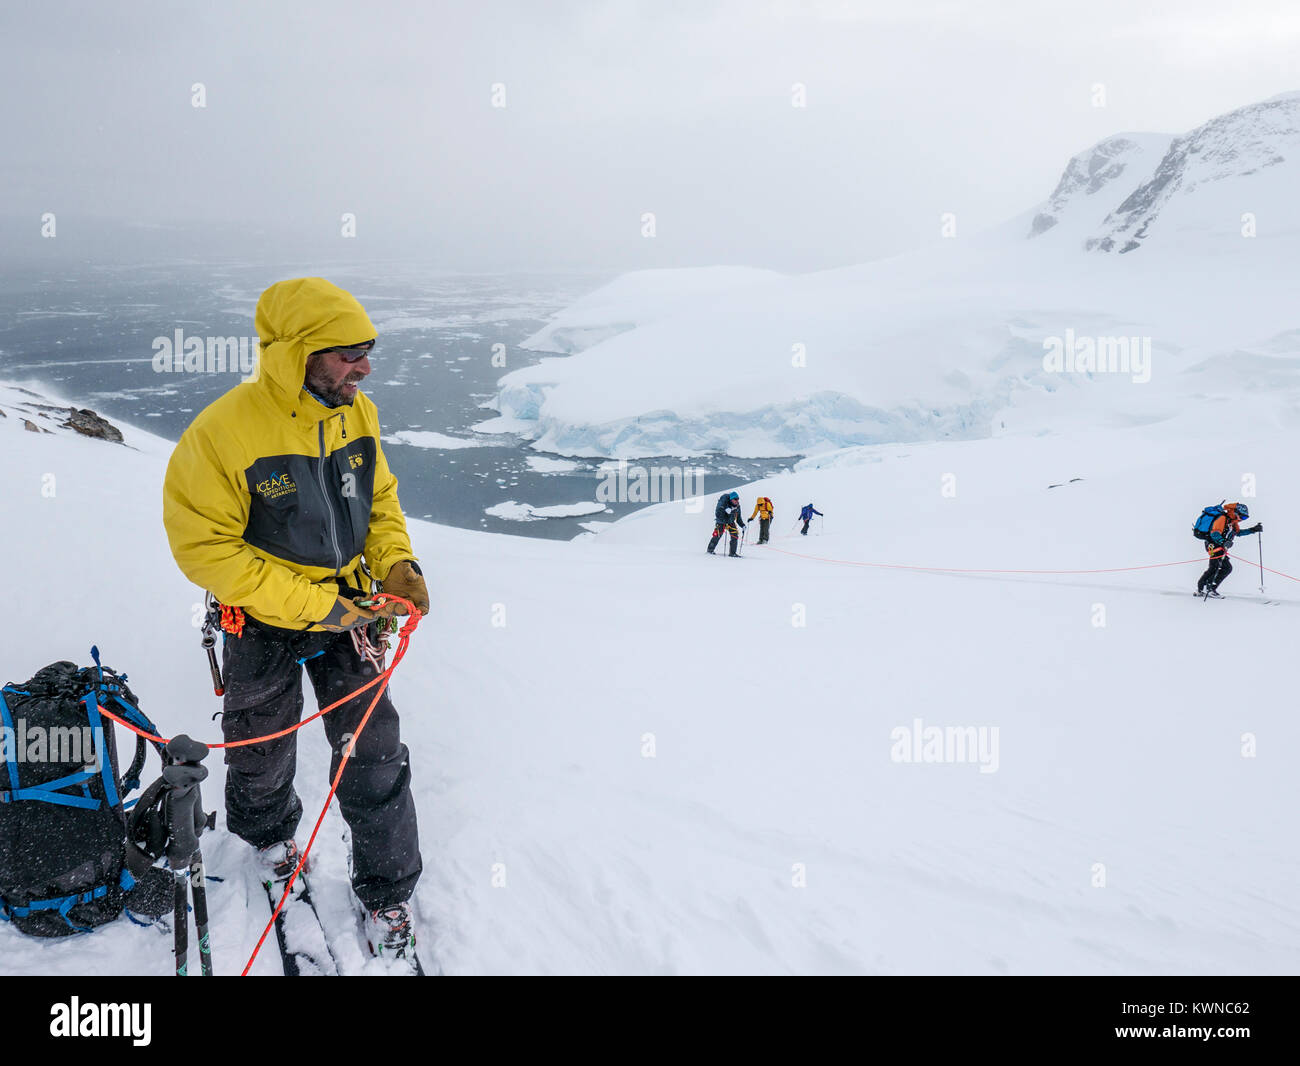 Skitourengeher roped gemeinsam für Sicherheit von gletscherspalten verwenden synthetische Felle auf Skiern den Berg hinauf zu klettern; Antarktis Stockfoto